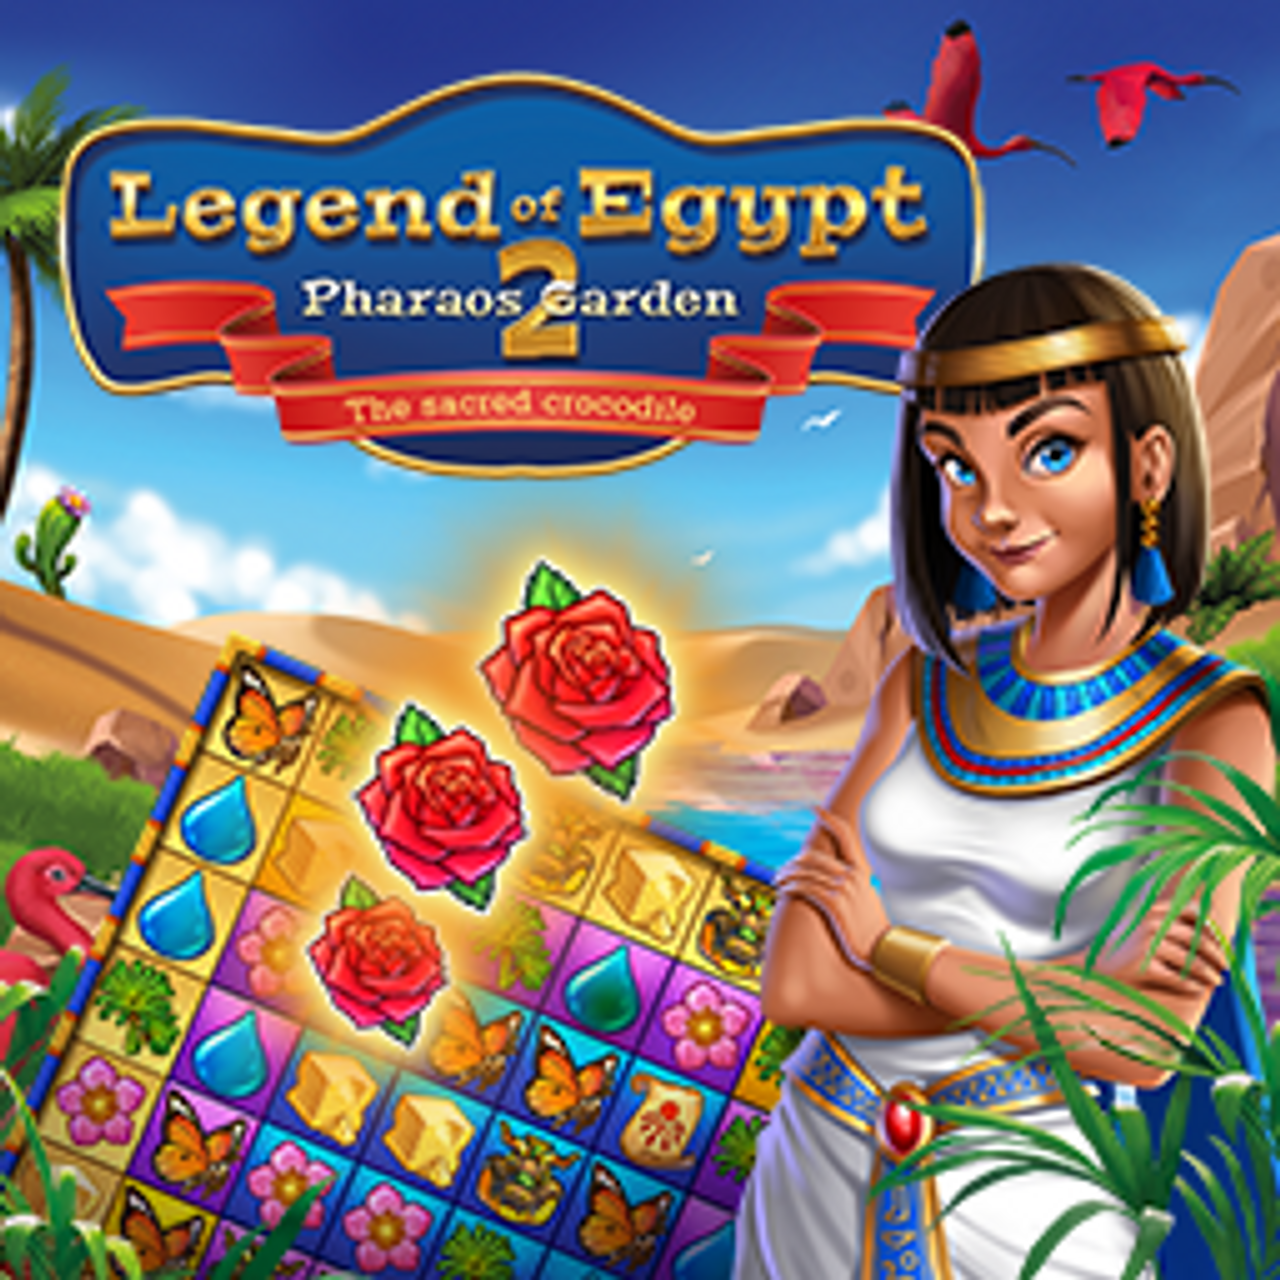 Legend of Egypt: Pharaoh's Garden 2 - The Sacred Crocodile